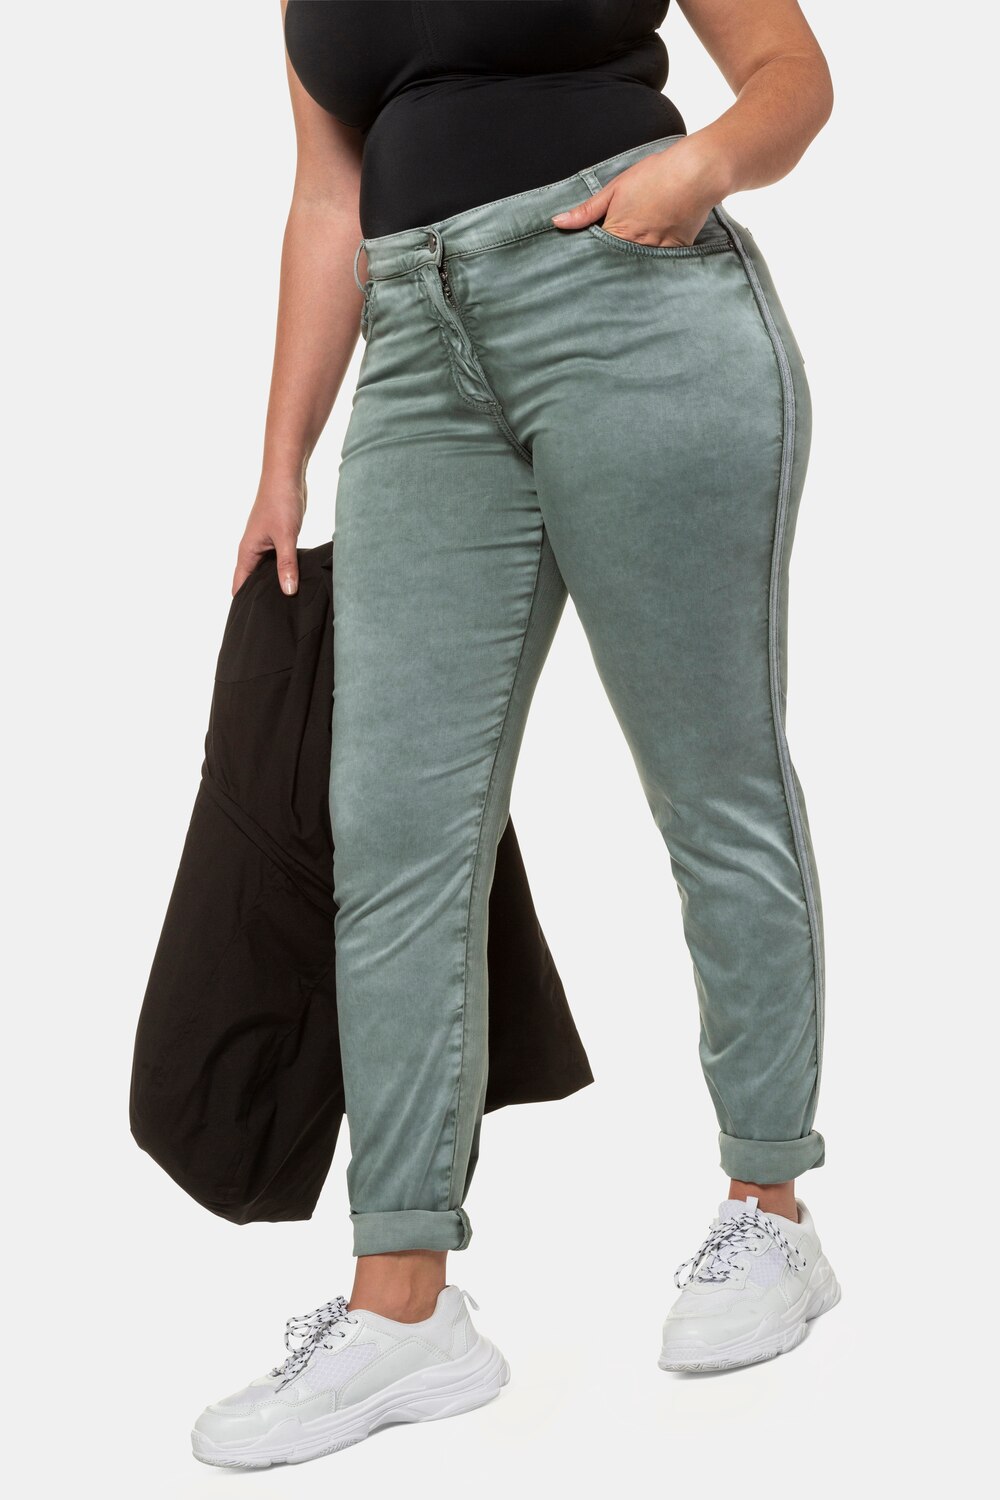 Grote Maten jeans Sammy, Dames, turquoise, Maat: 44, Katoen/Synthetische vezels, Ulla Popken